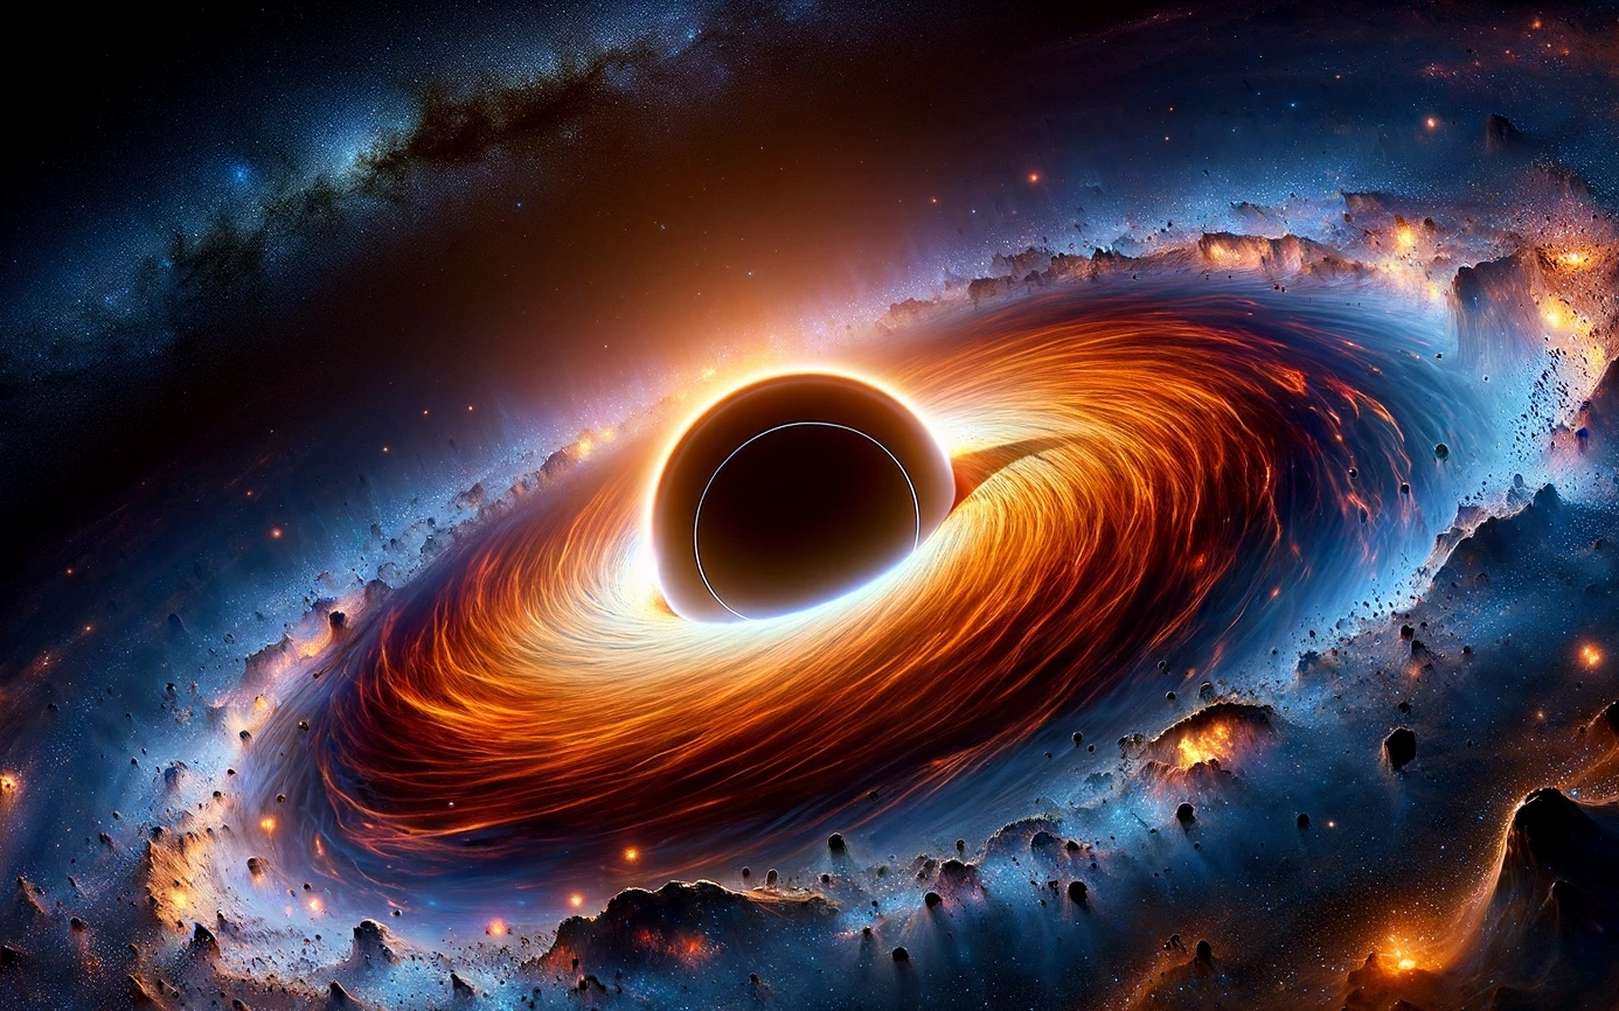 Ce trou noir plus brillant que des milliards d'étoiles « mange un peu plus d'un soleil par jour » !